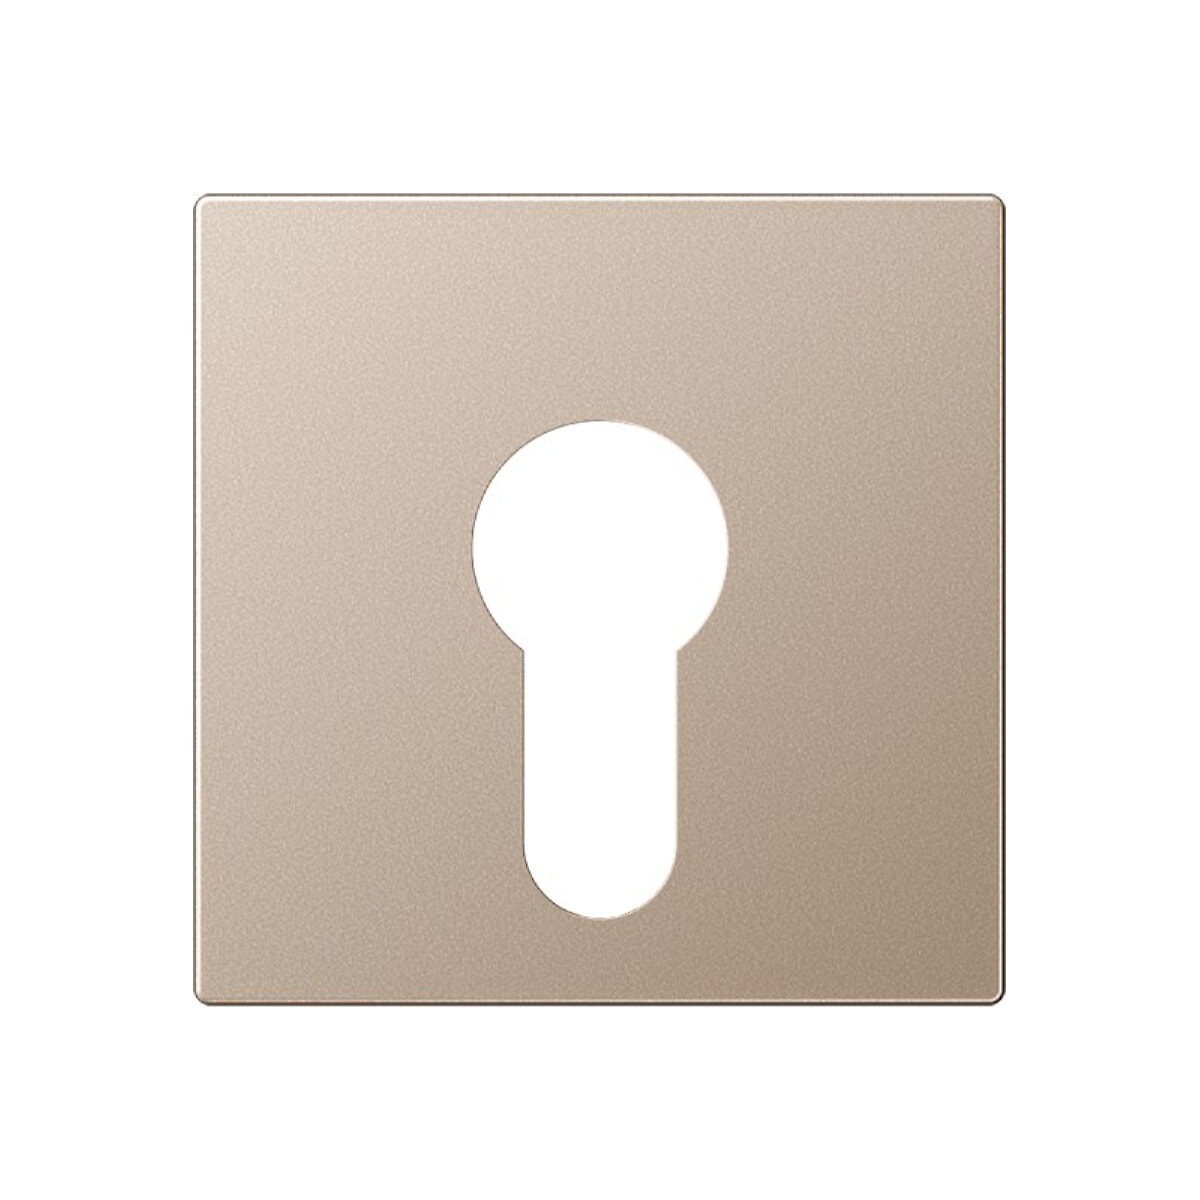 Jung Abdeckung für Schlüsselschalter ohne Demontageschutz, Thermoplast lackiert, Serie A, champagner A525PLCH